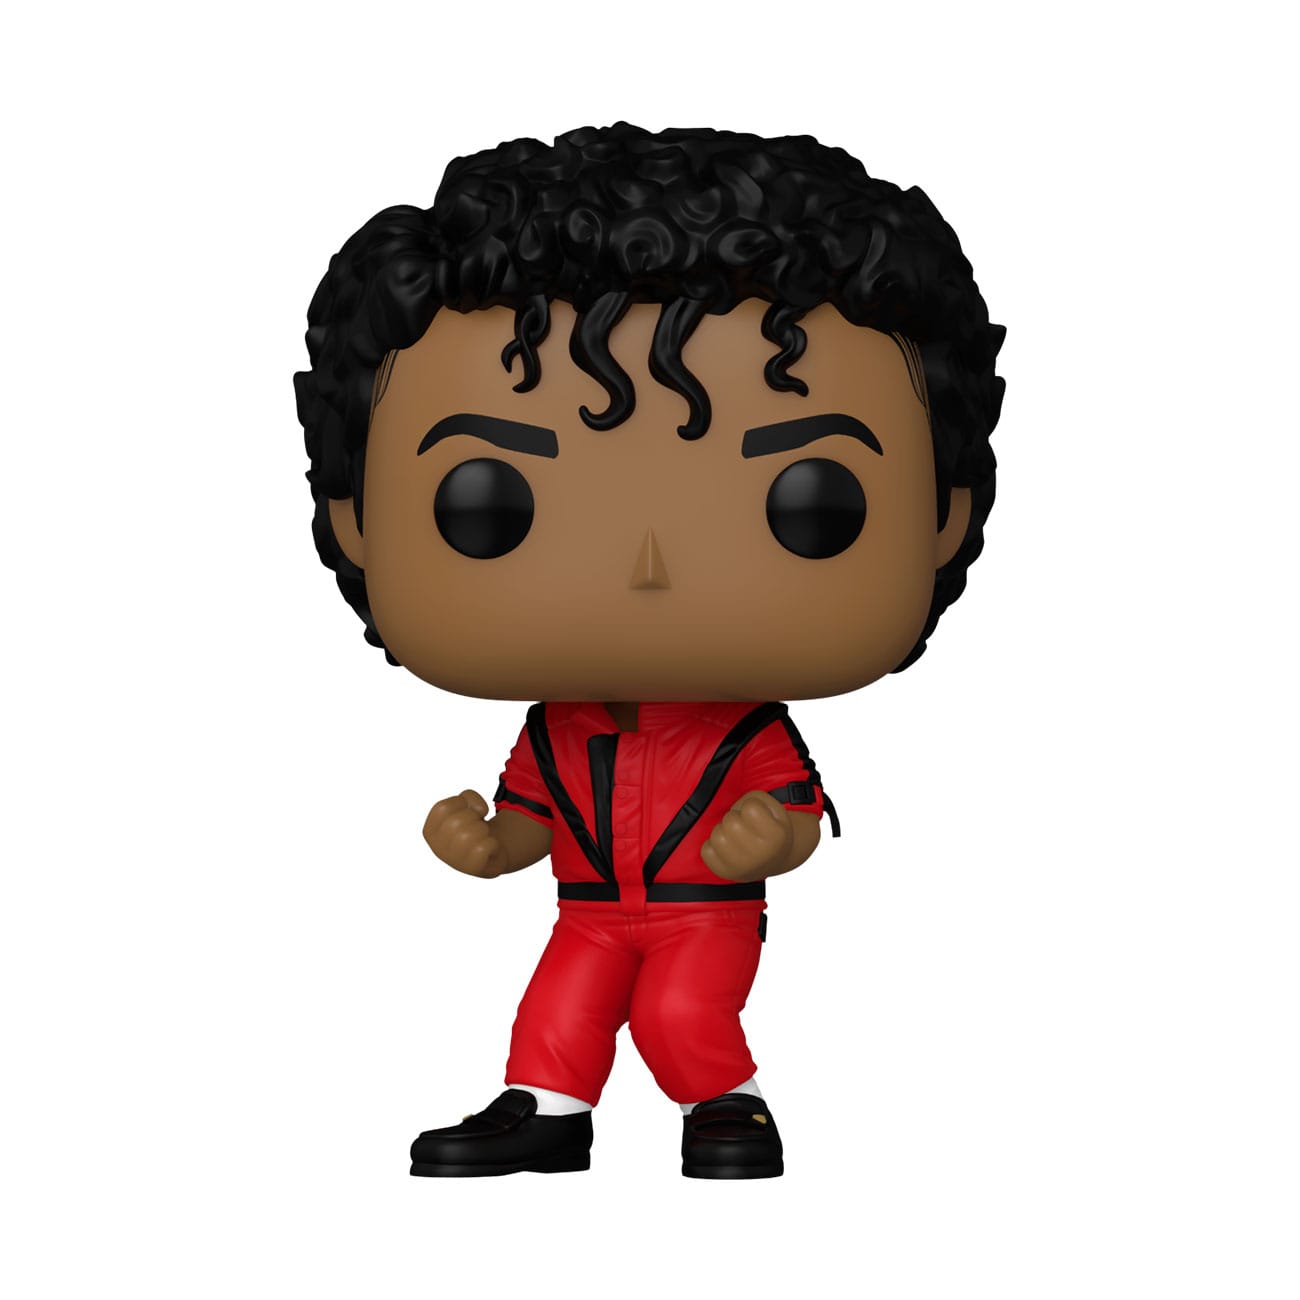 Michael Jackson Thriller POP! 359